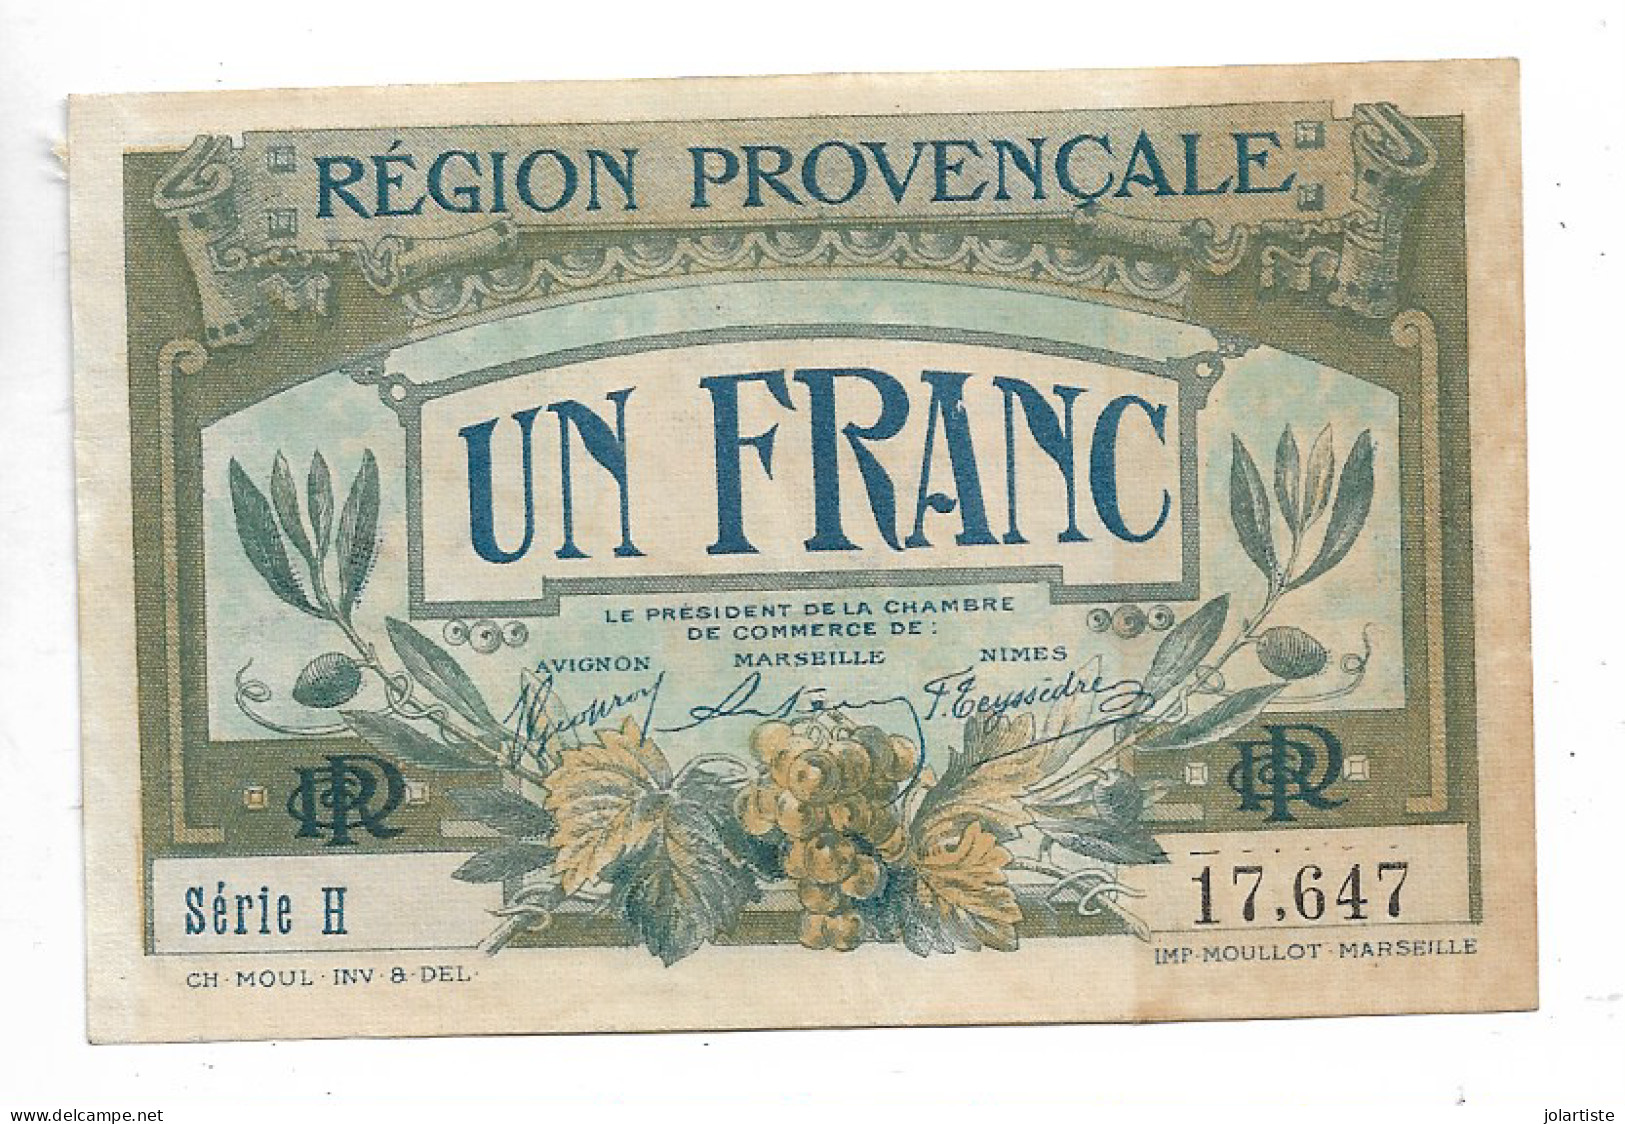 Region Provencale Marseille Un Franc Serie H Dimension: 98 Mm X 63 Mm N0166 - Chambre De Commerce